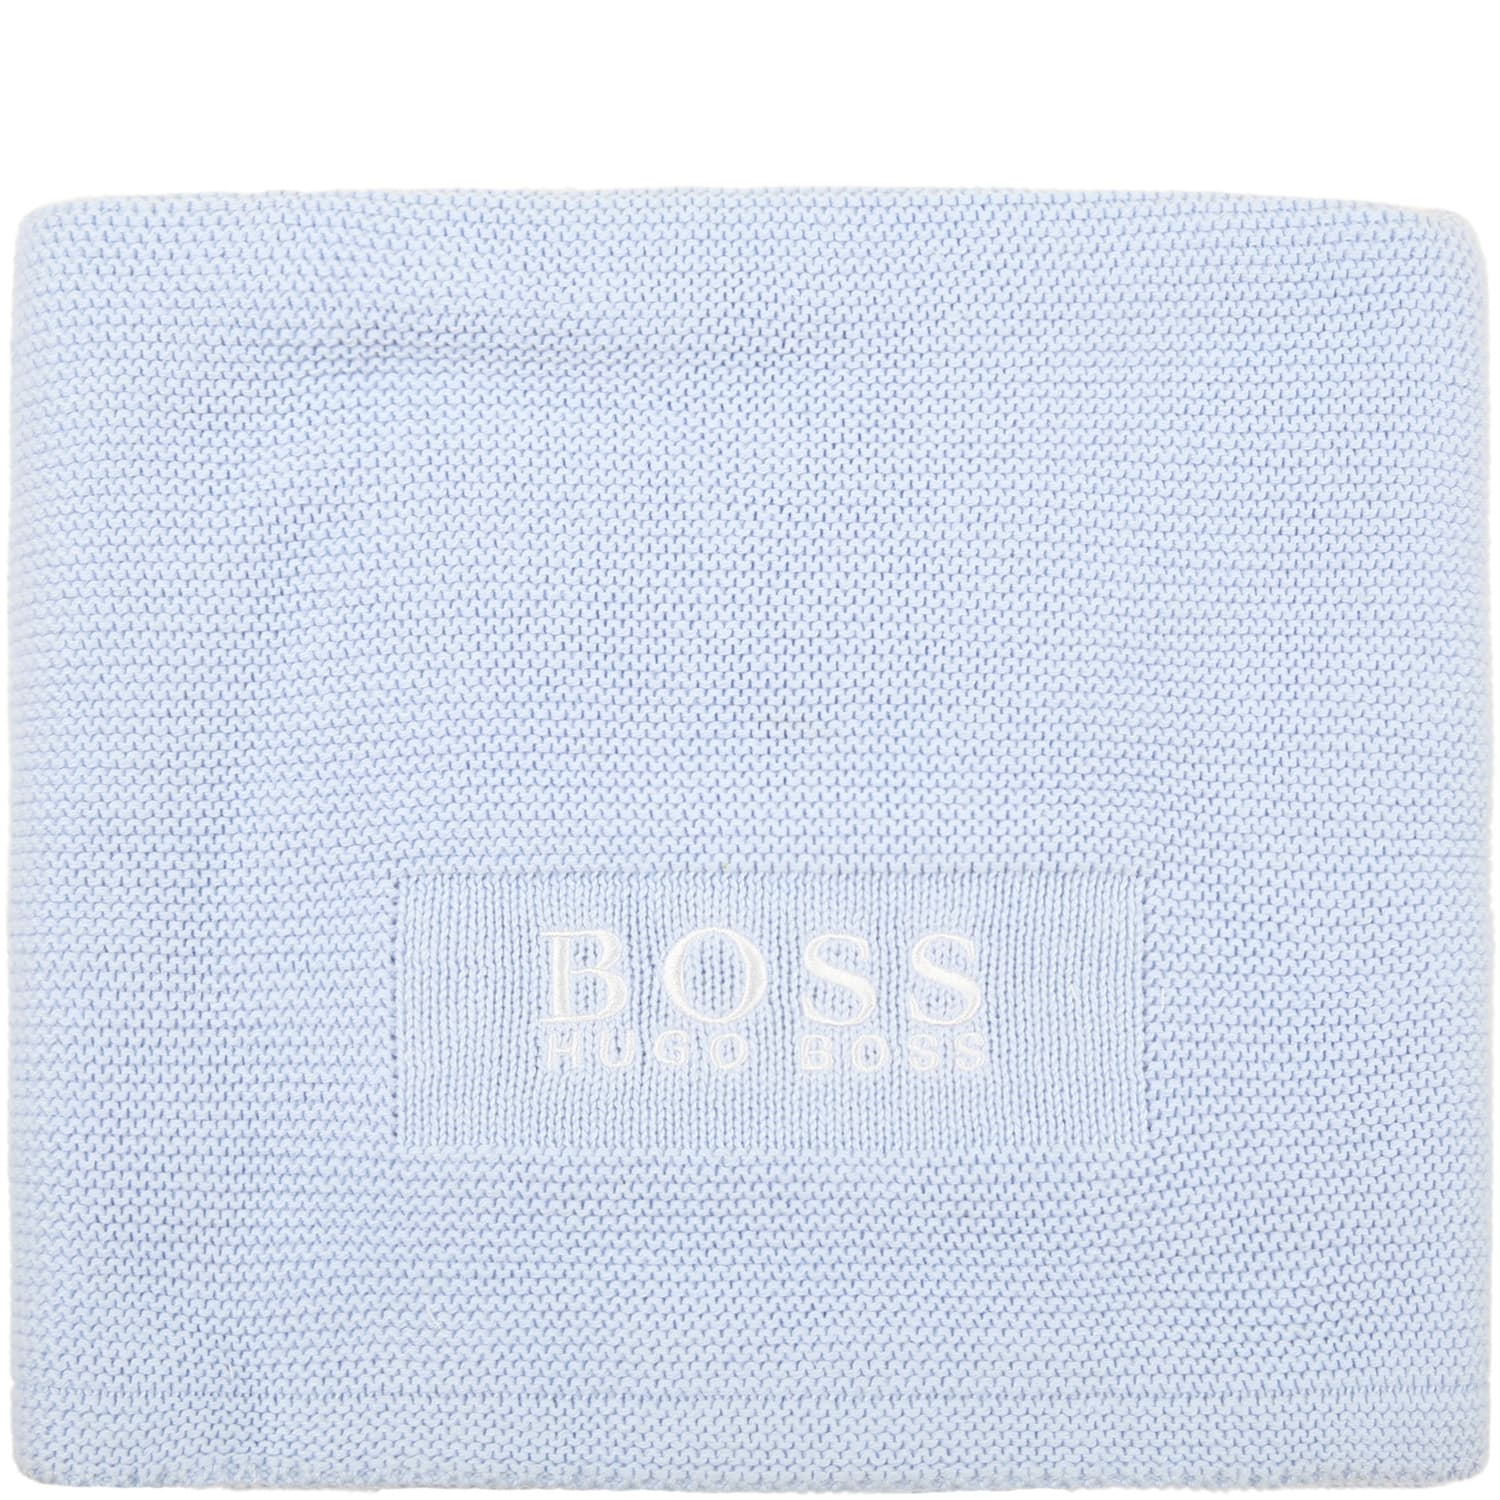 Hugo Boss Light Blue Blanket For Baby Boy With Logo